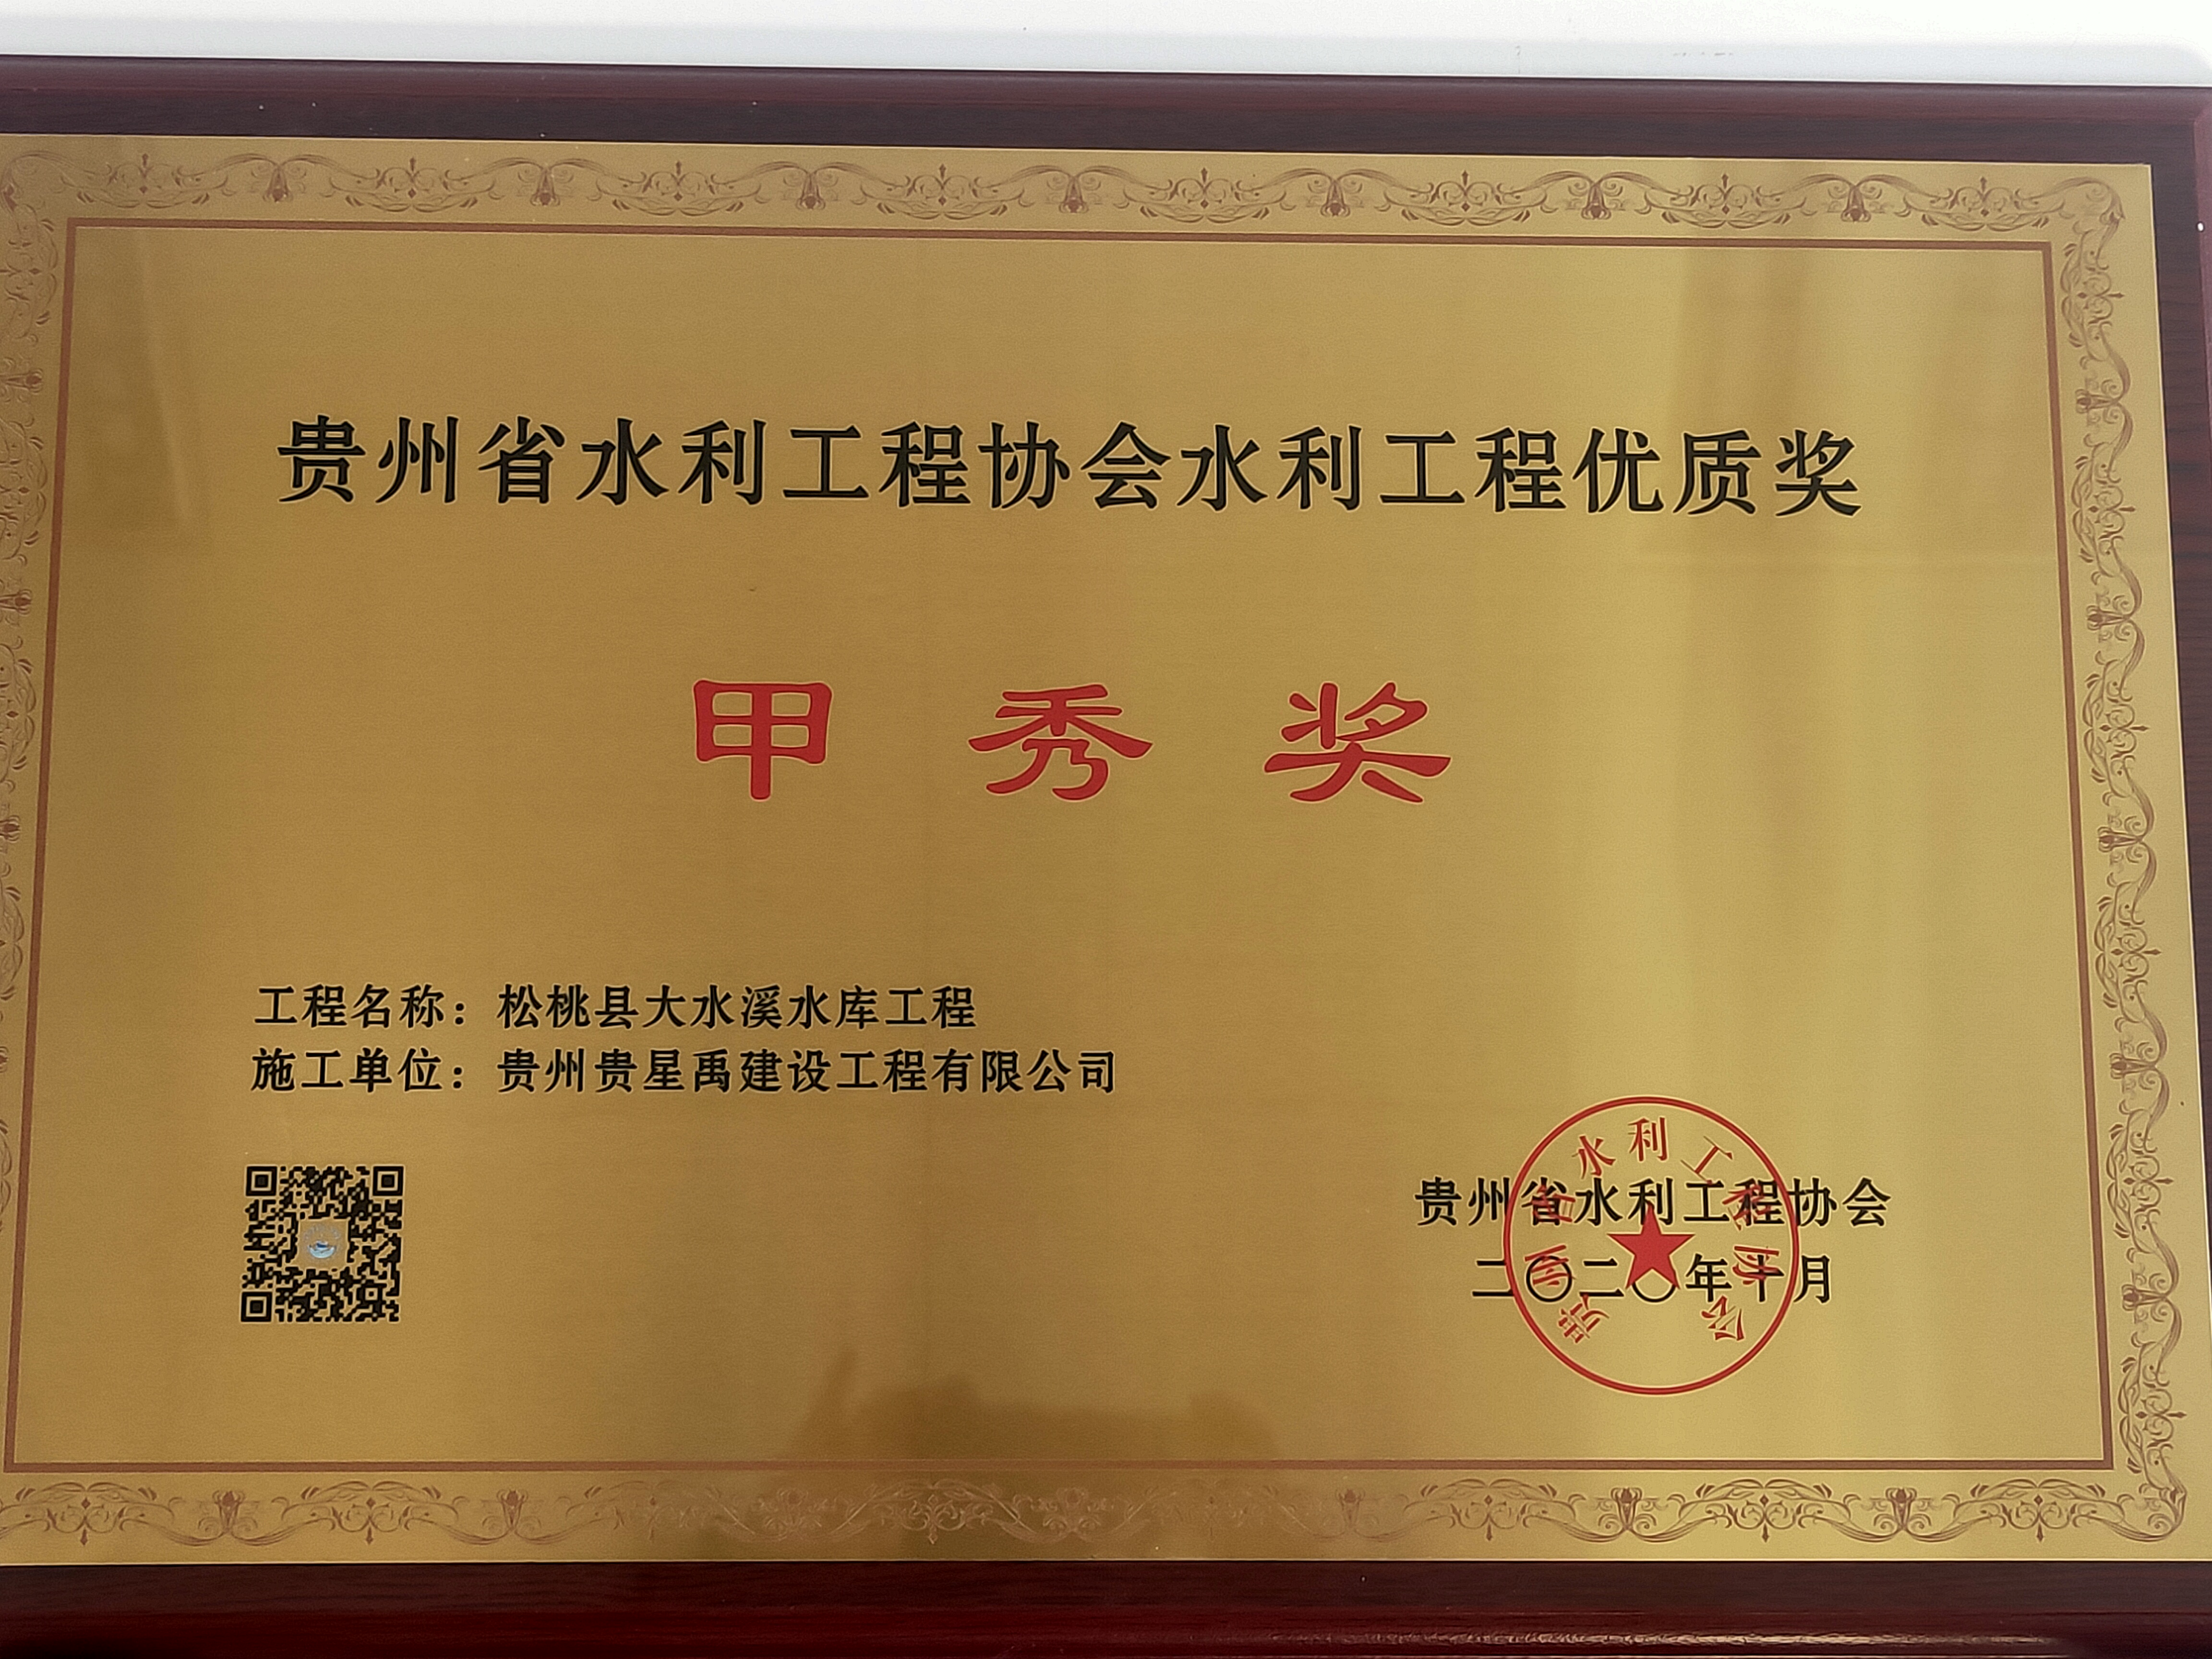 贵州省水利工程协会水利工程优质奖甲秀奖